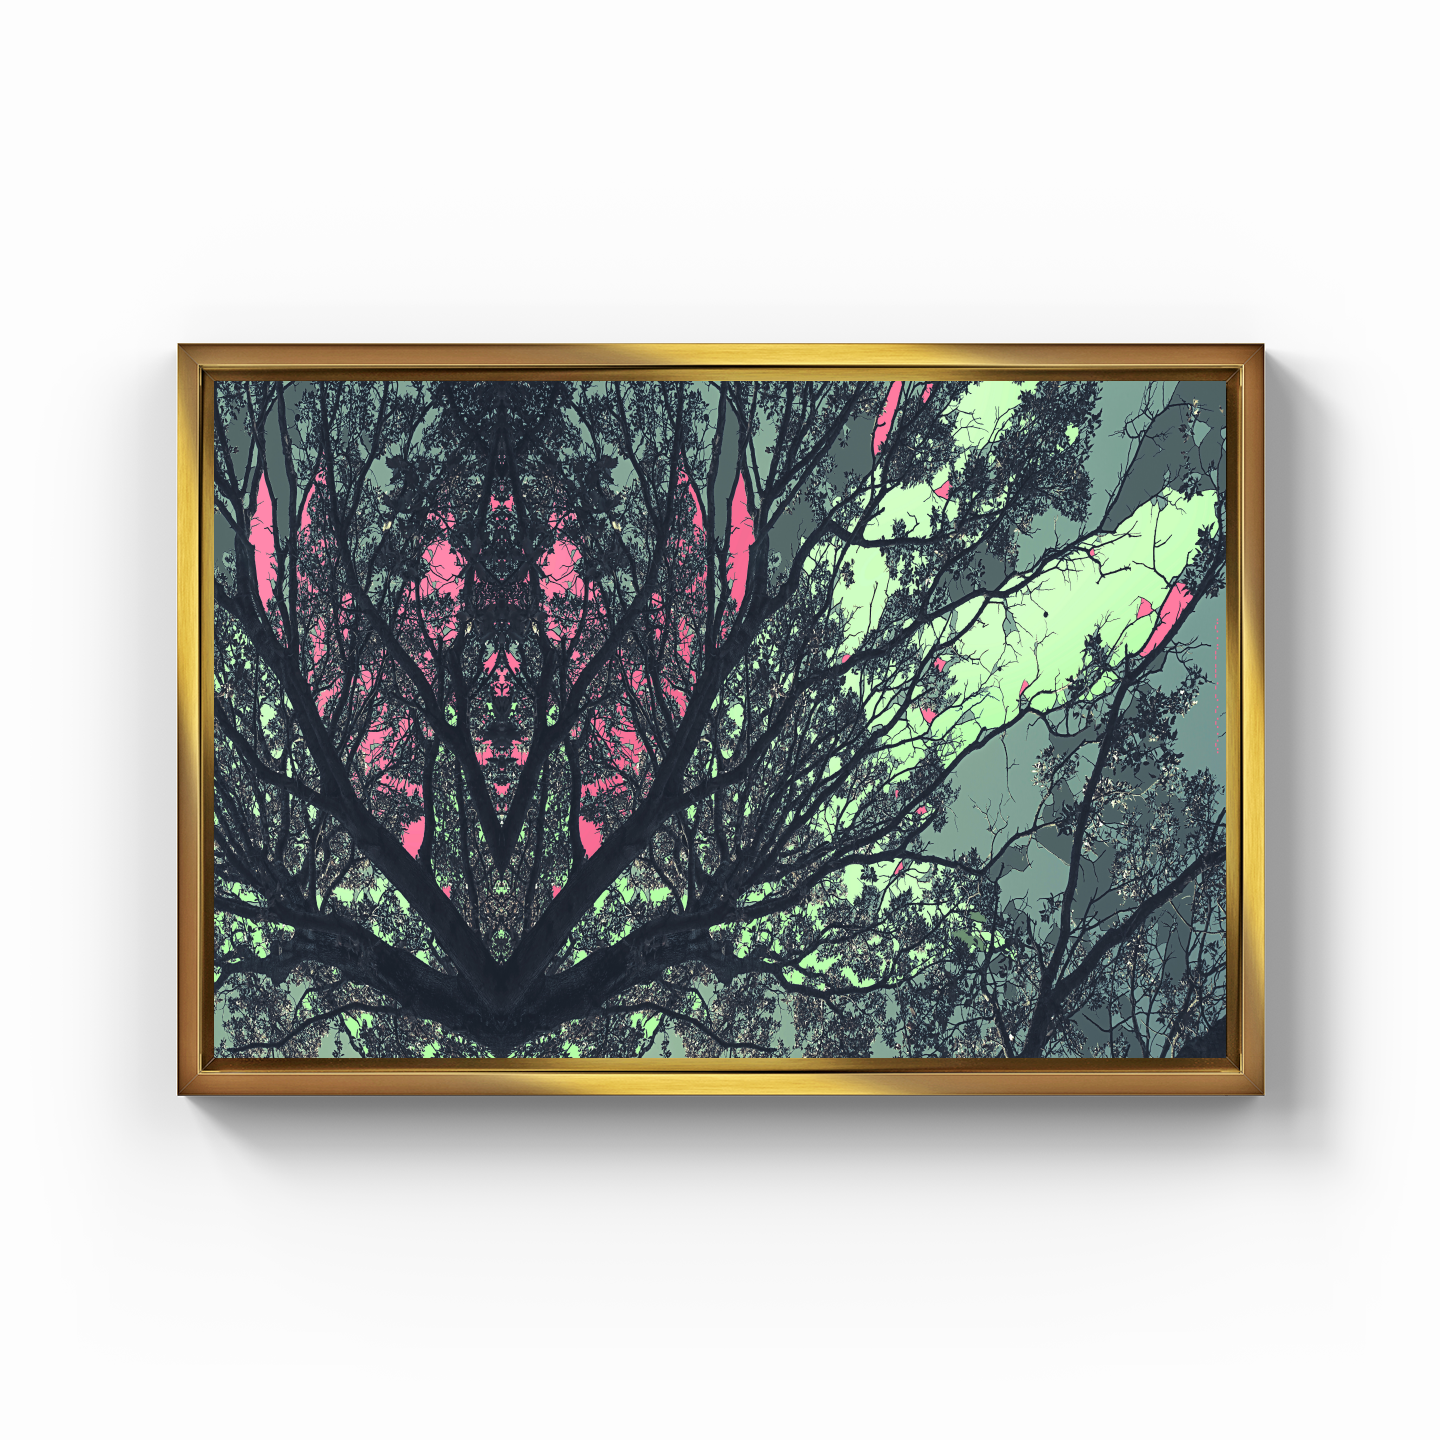 Simetri Ağaç Dal Orman Ekspresyonist Abstrakt Manzara No 22 - Kanvas Tablo